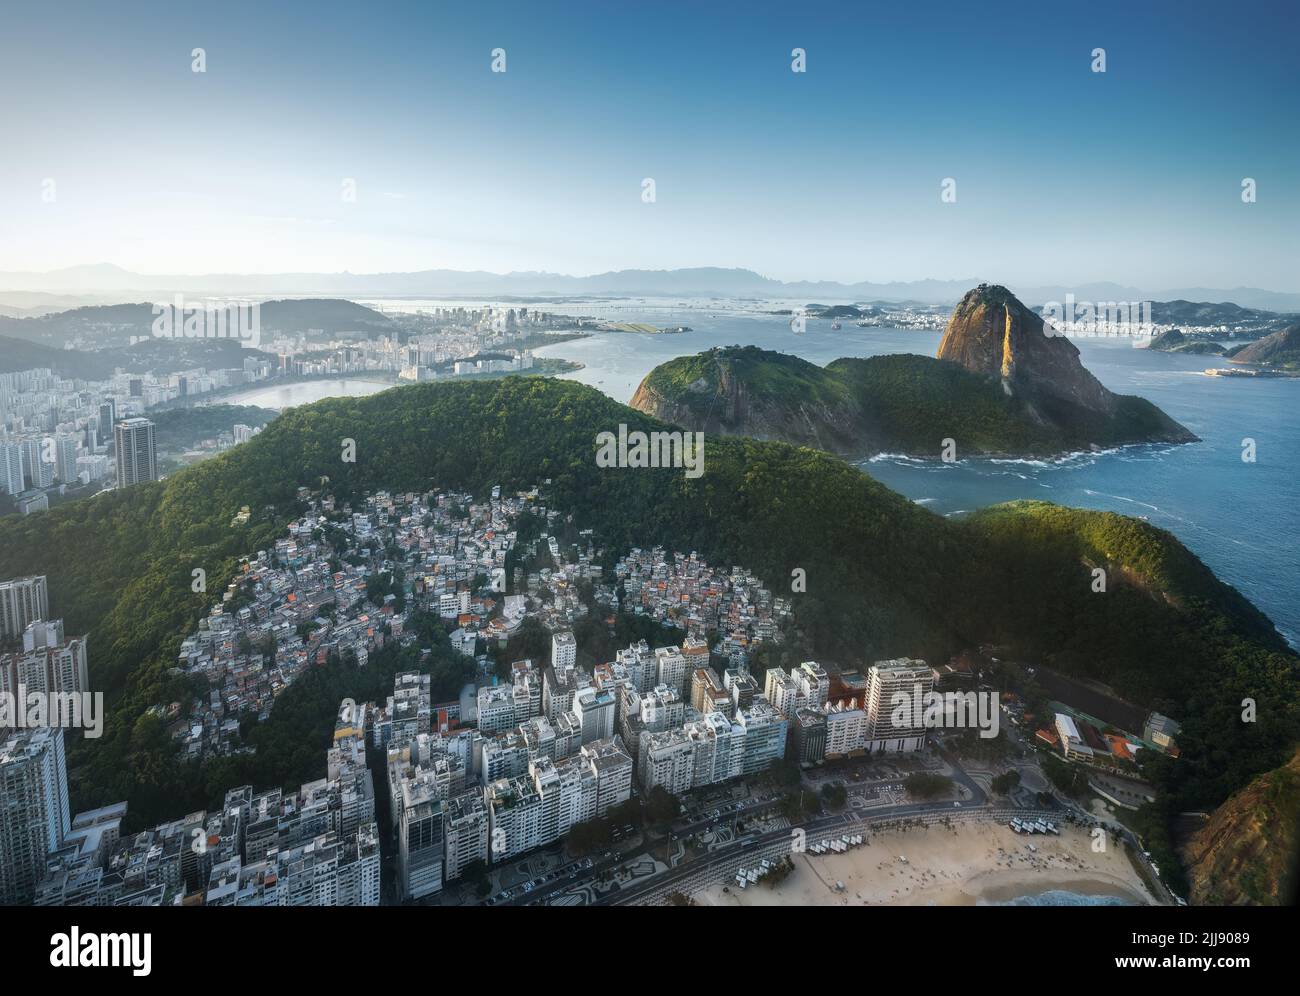 Luftaufnahme von Rio mit Zuckerhut und Strand von Leme - Rio de Janeiro, Brasilien Stockfoto